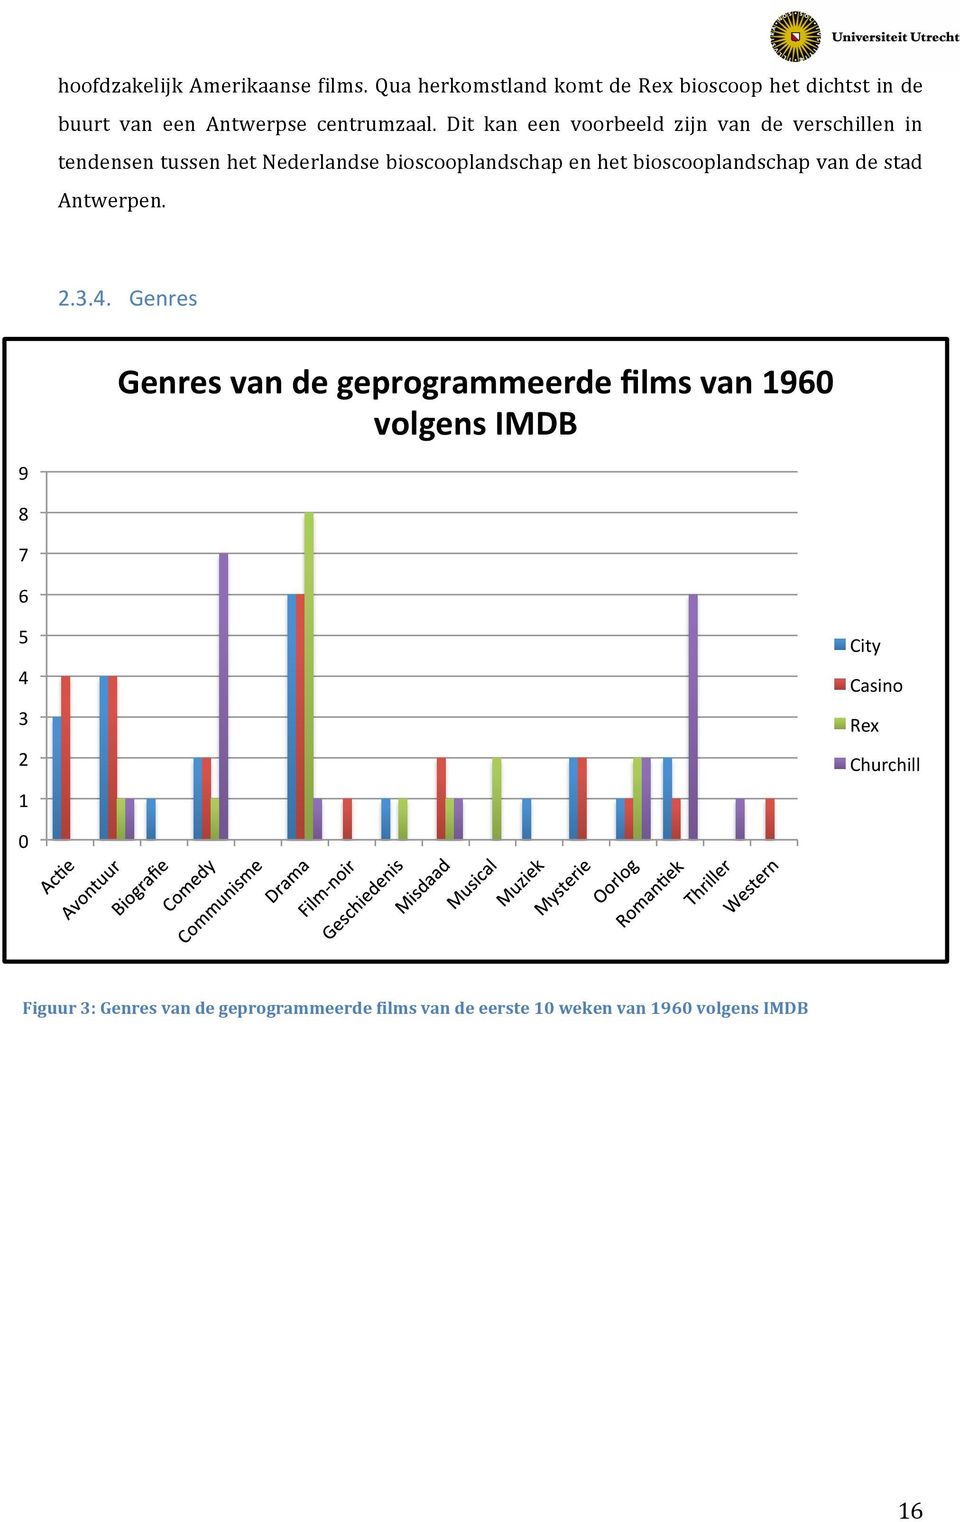 Dit kan een voorbeeld zijn van de verschillen in tendensen tussen het Nederlandse bioscooplandschap en het